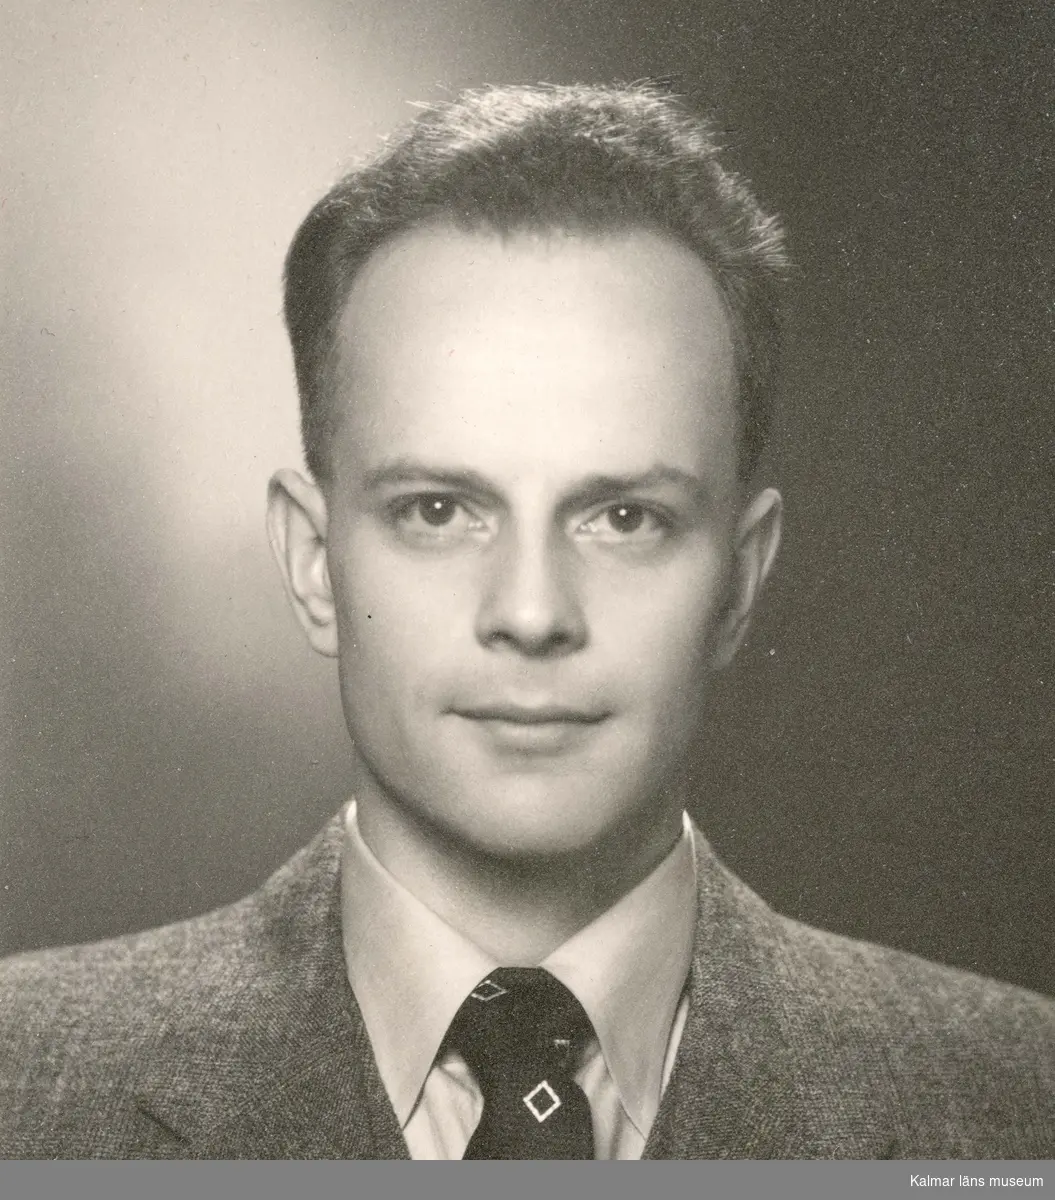 Porträtt av byggnadsingenjör Sven L Sjöwall (född 1916 död 2005). Verksam som byggnadsinspektör och fastighetschef i Nybro kommun. Drev egen firma och är arkitekt eller konstruktör till många byggnader i Nybro.